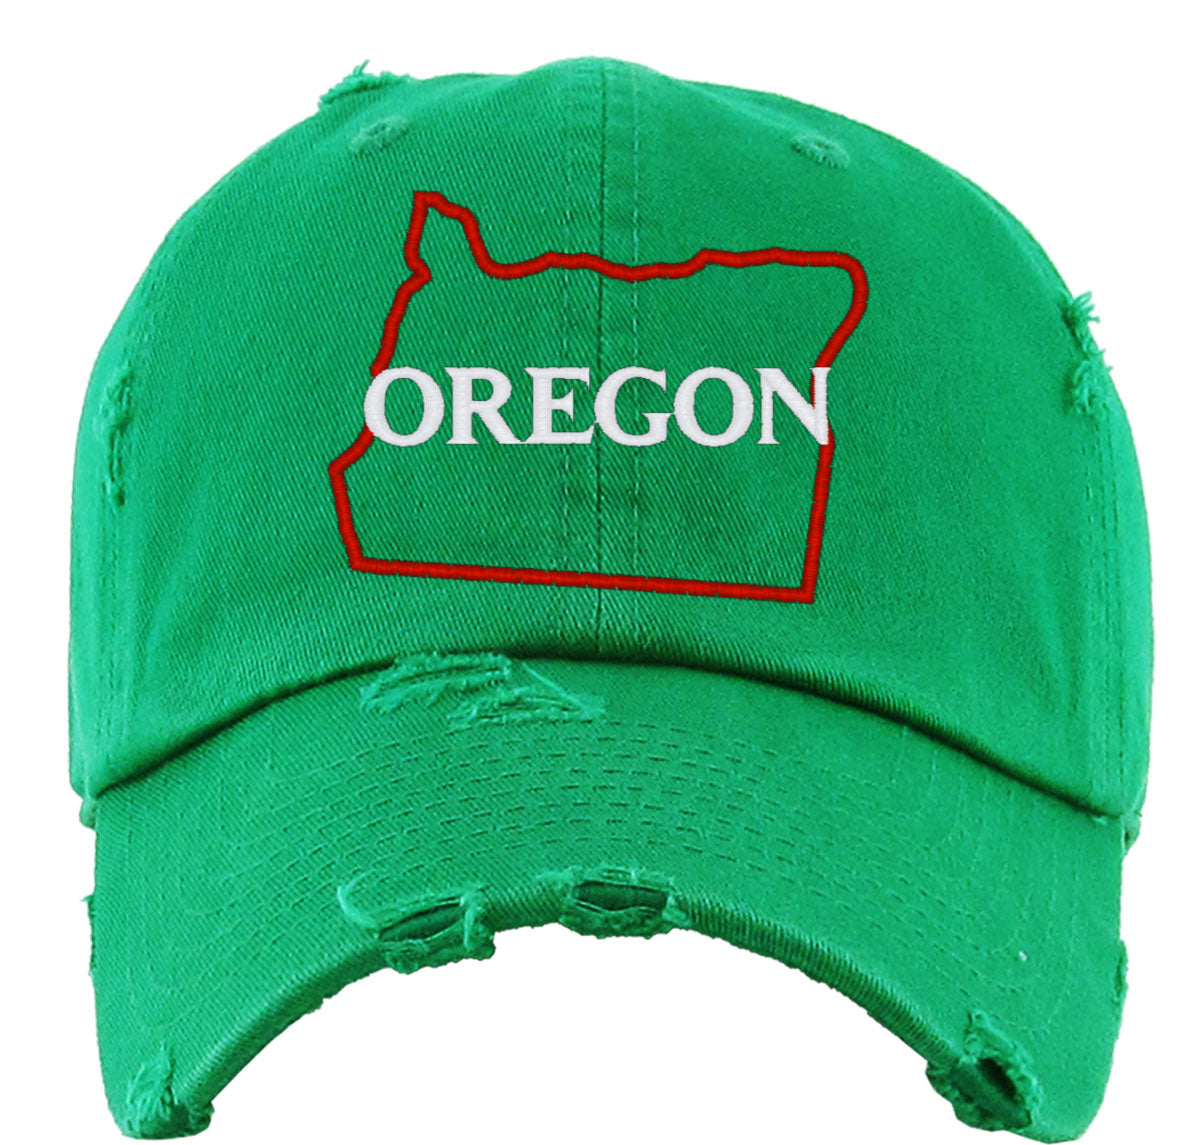 Oregon Vintage Baseball Cap